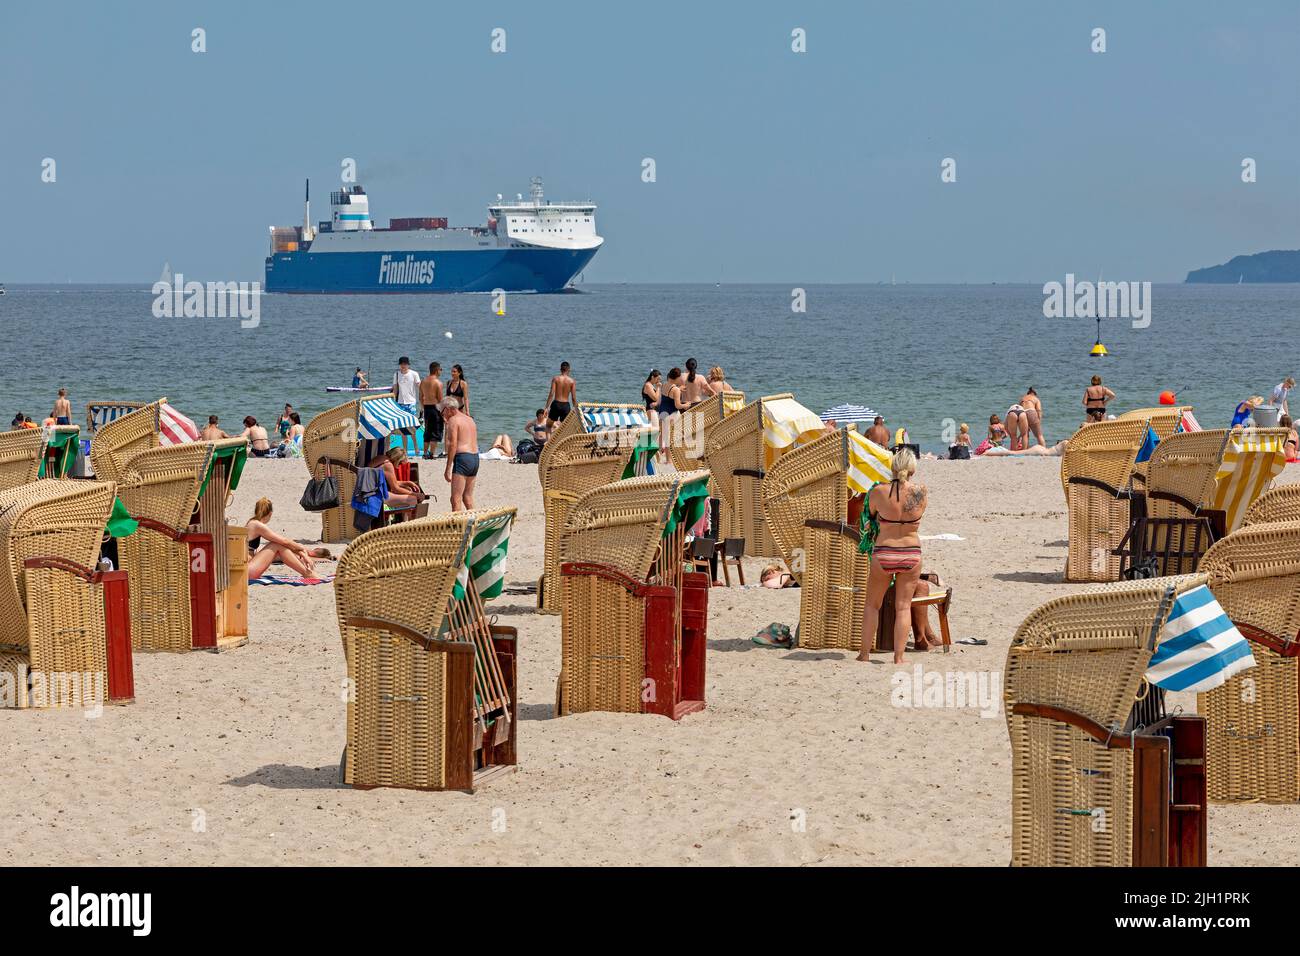 beach chairs, Finnlines Ferry, beach, Travemünde, Lübeck, Schleswig-Holstein, Germany Stock Photo